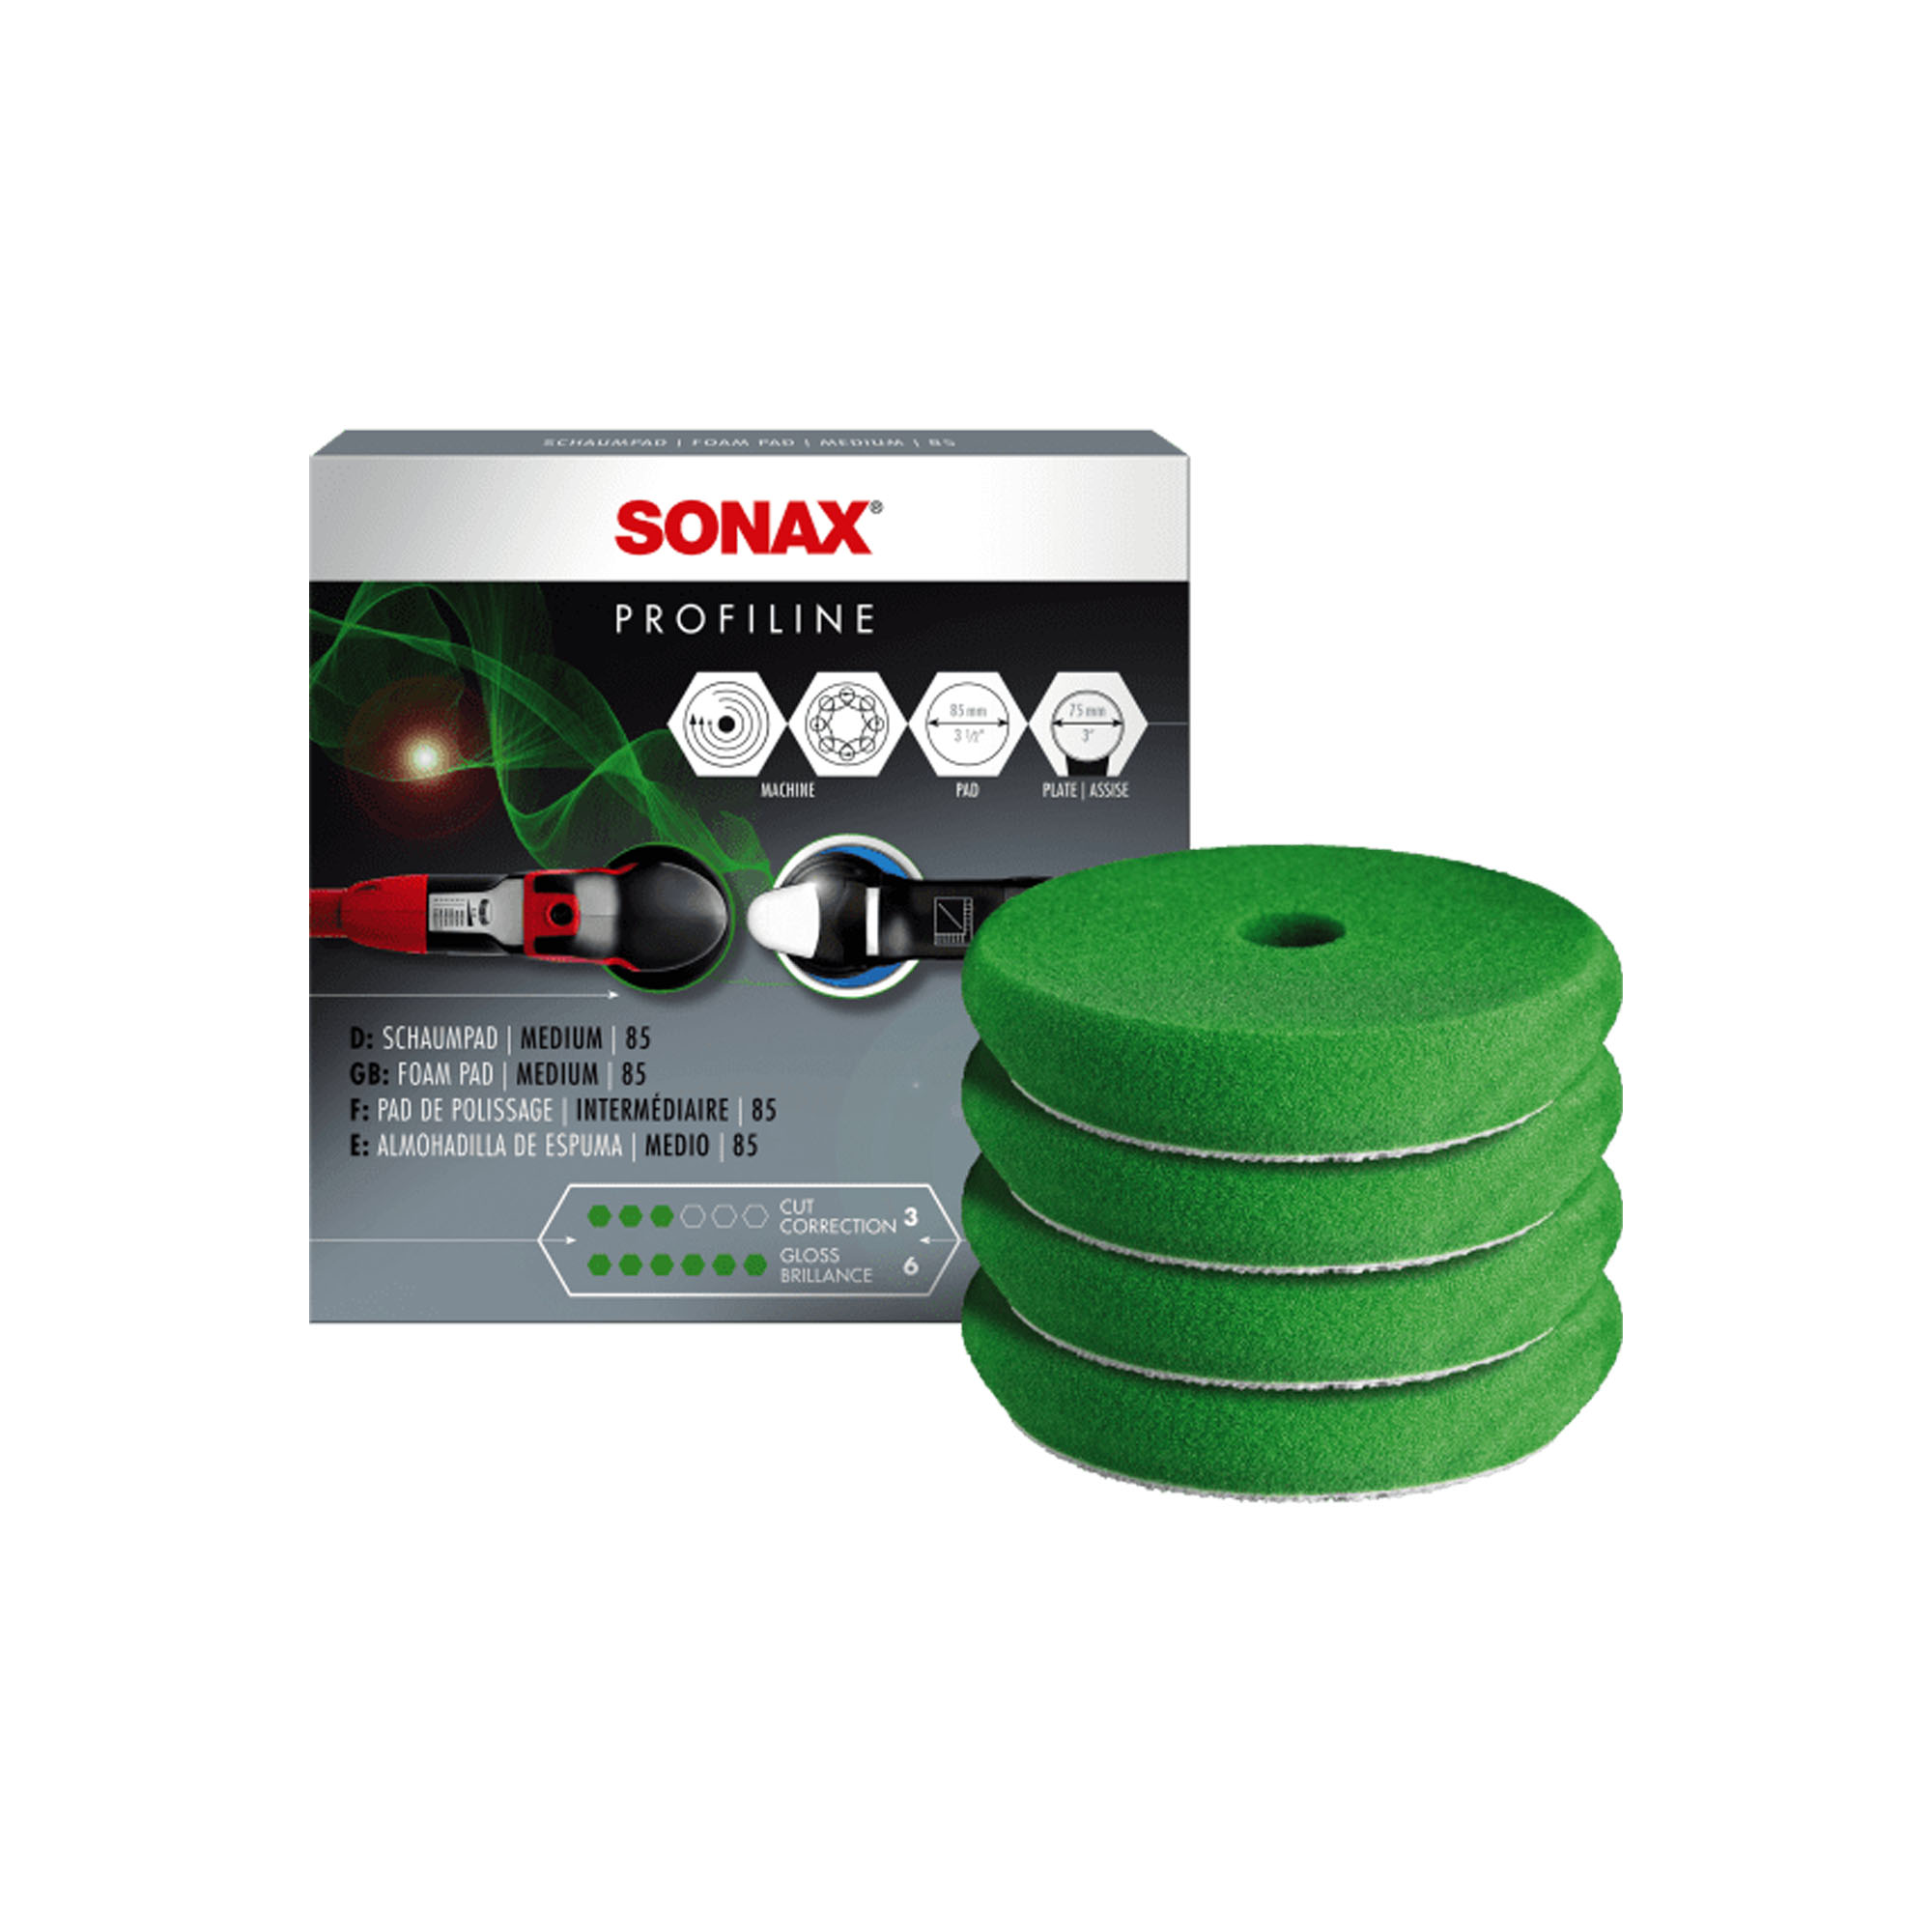 Sonax 4 foam pads (medium) 85mm